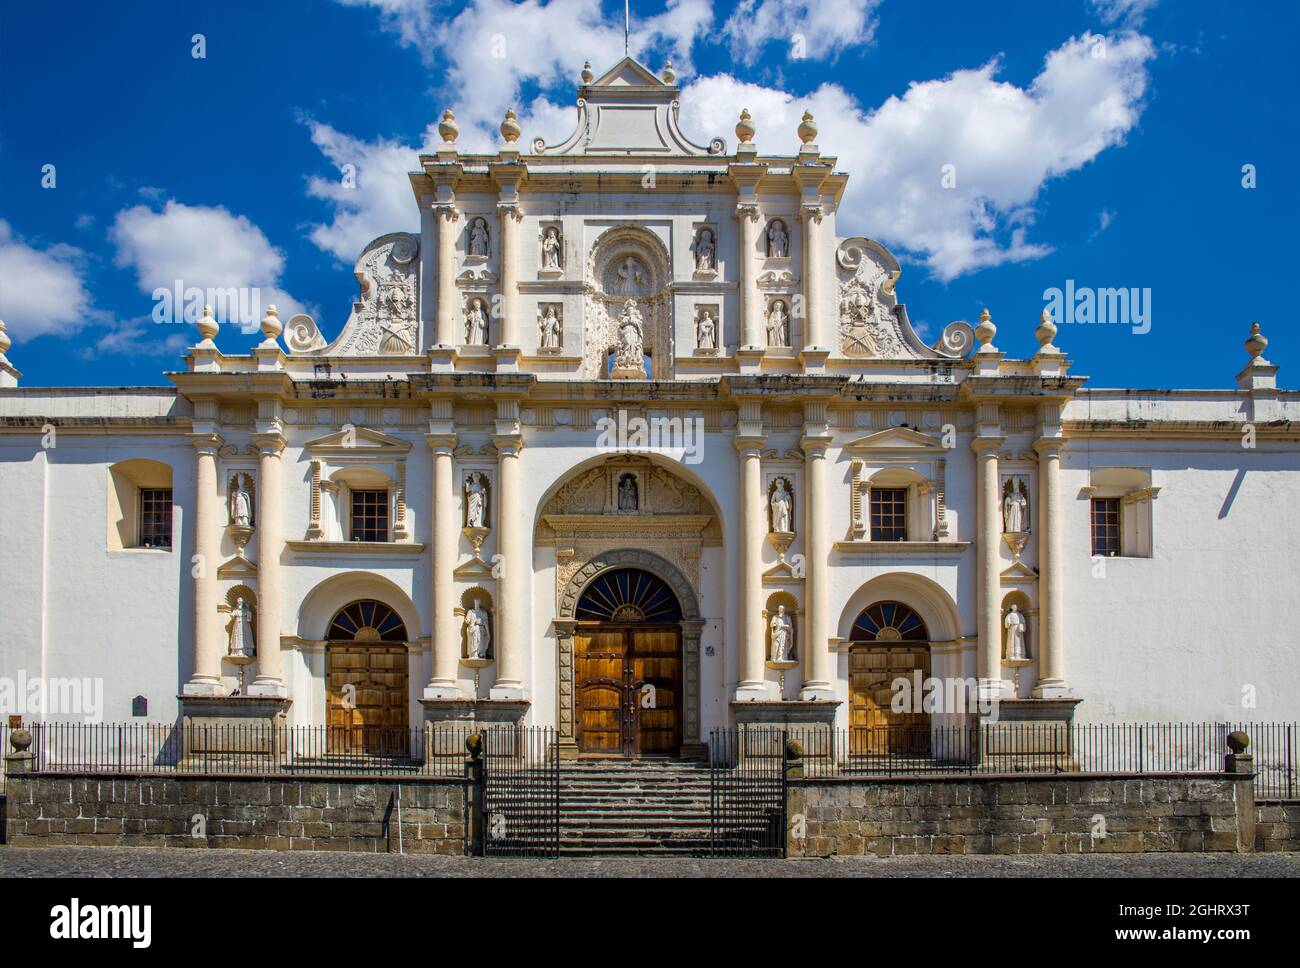 Facade of San Jose Cathedral, Parque Central, Antigua, Antigua, Guatemala Stock Photo